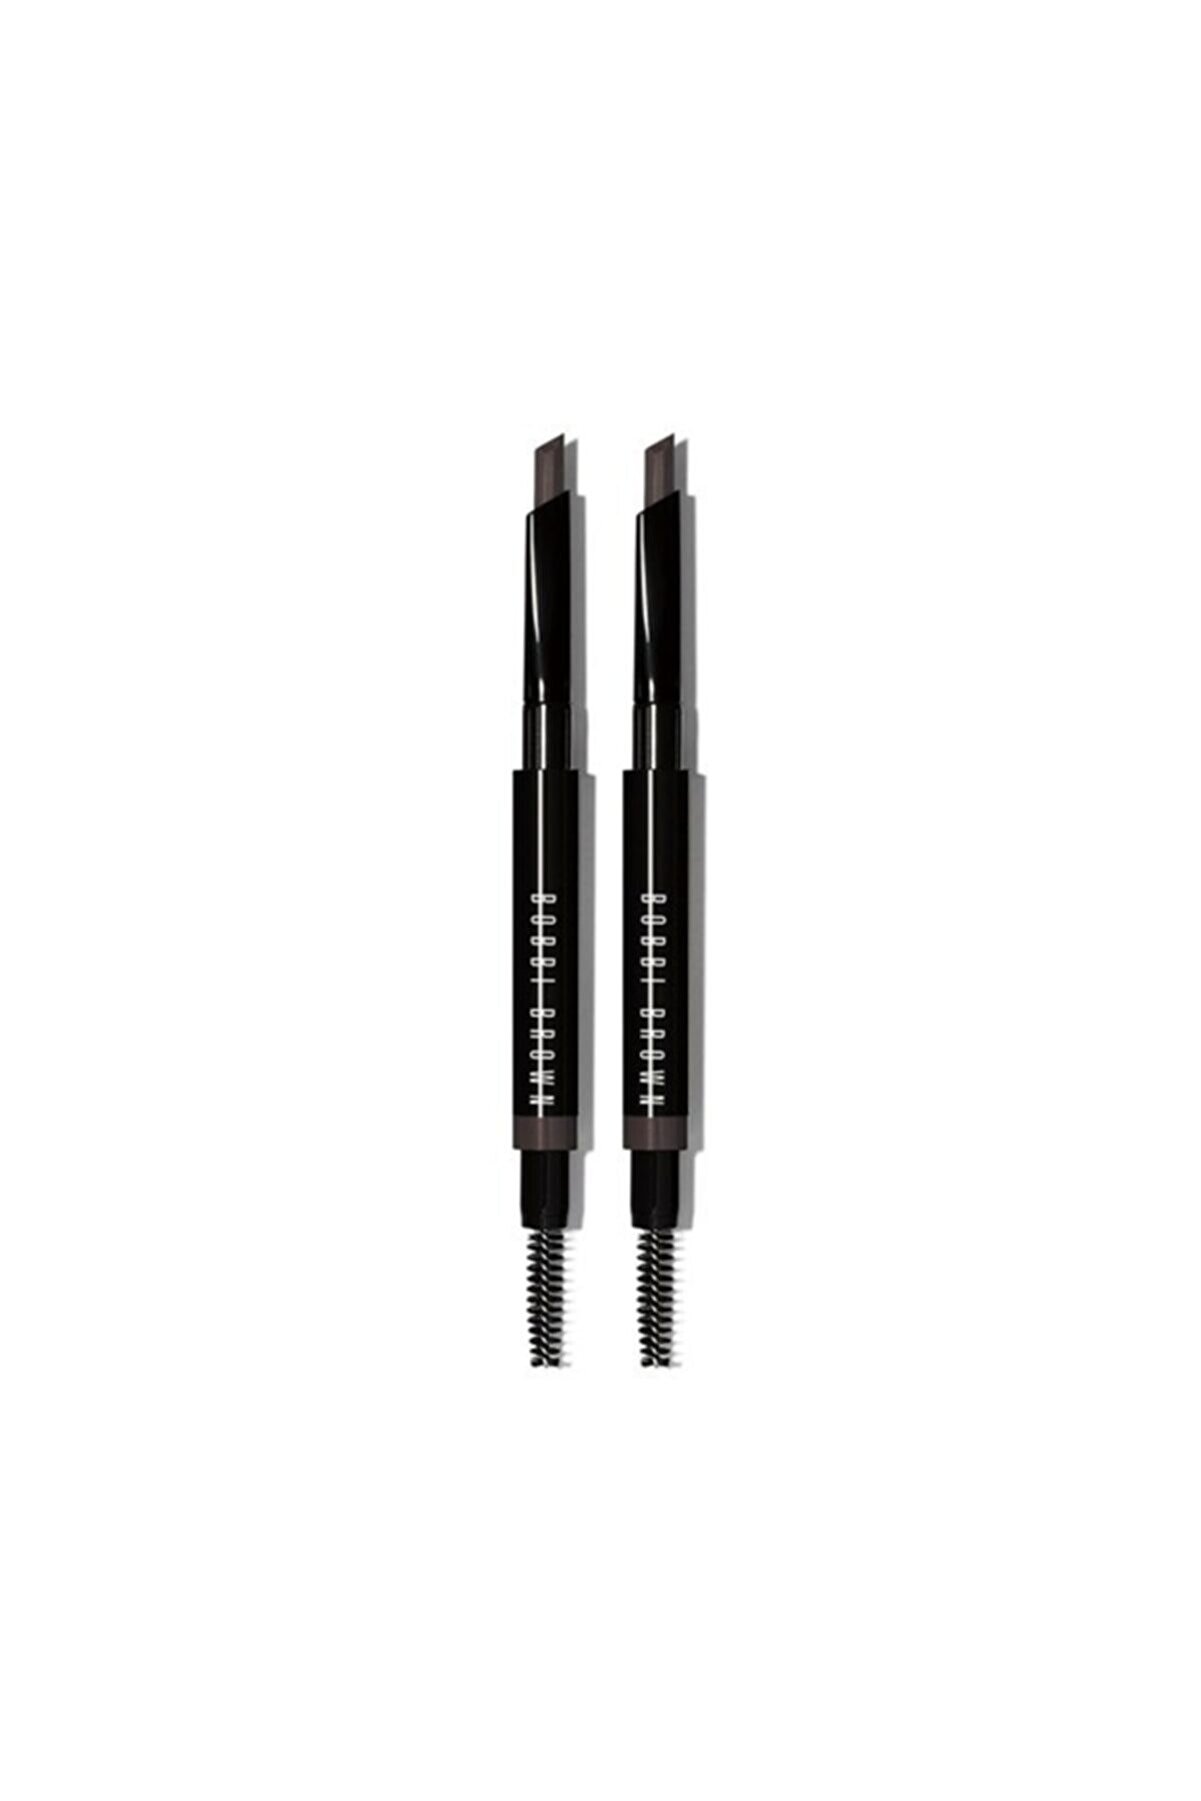 Bobbi Brown Perfectly Defined Long-wear Brow Pencil Duo - Mahogany 2.3 G Mahogany 716170236780